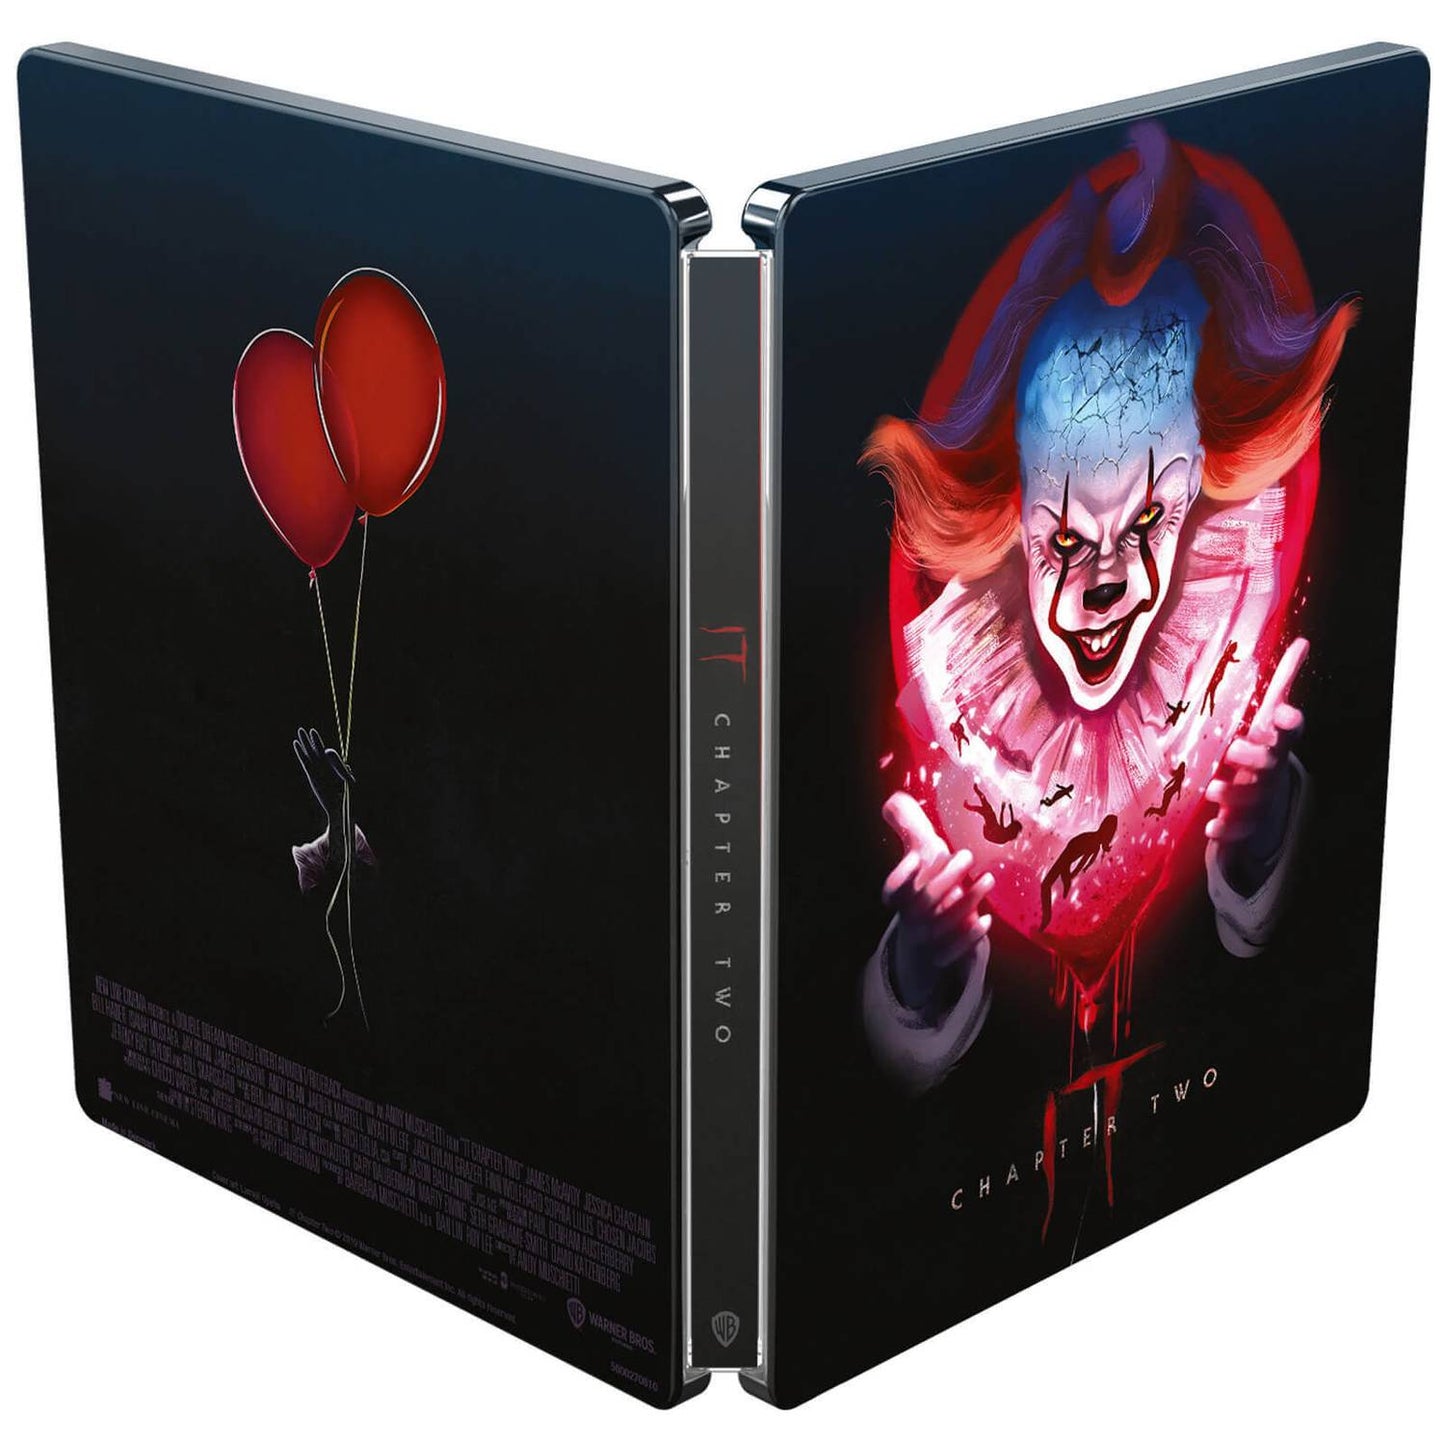 Оно: Части 1 и 2 [Коллекционное издание] (4K UHD + Blu-ray + Бонусный диск) Steelbook